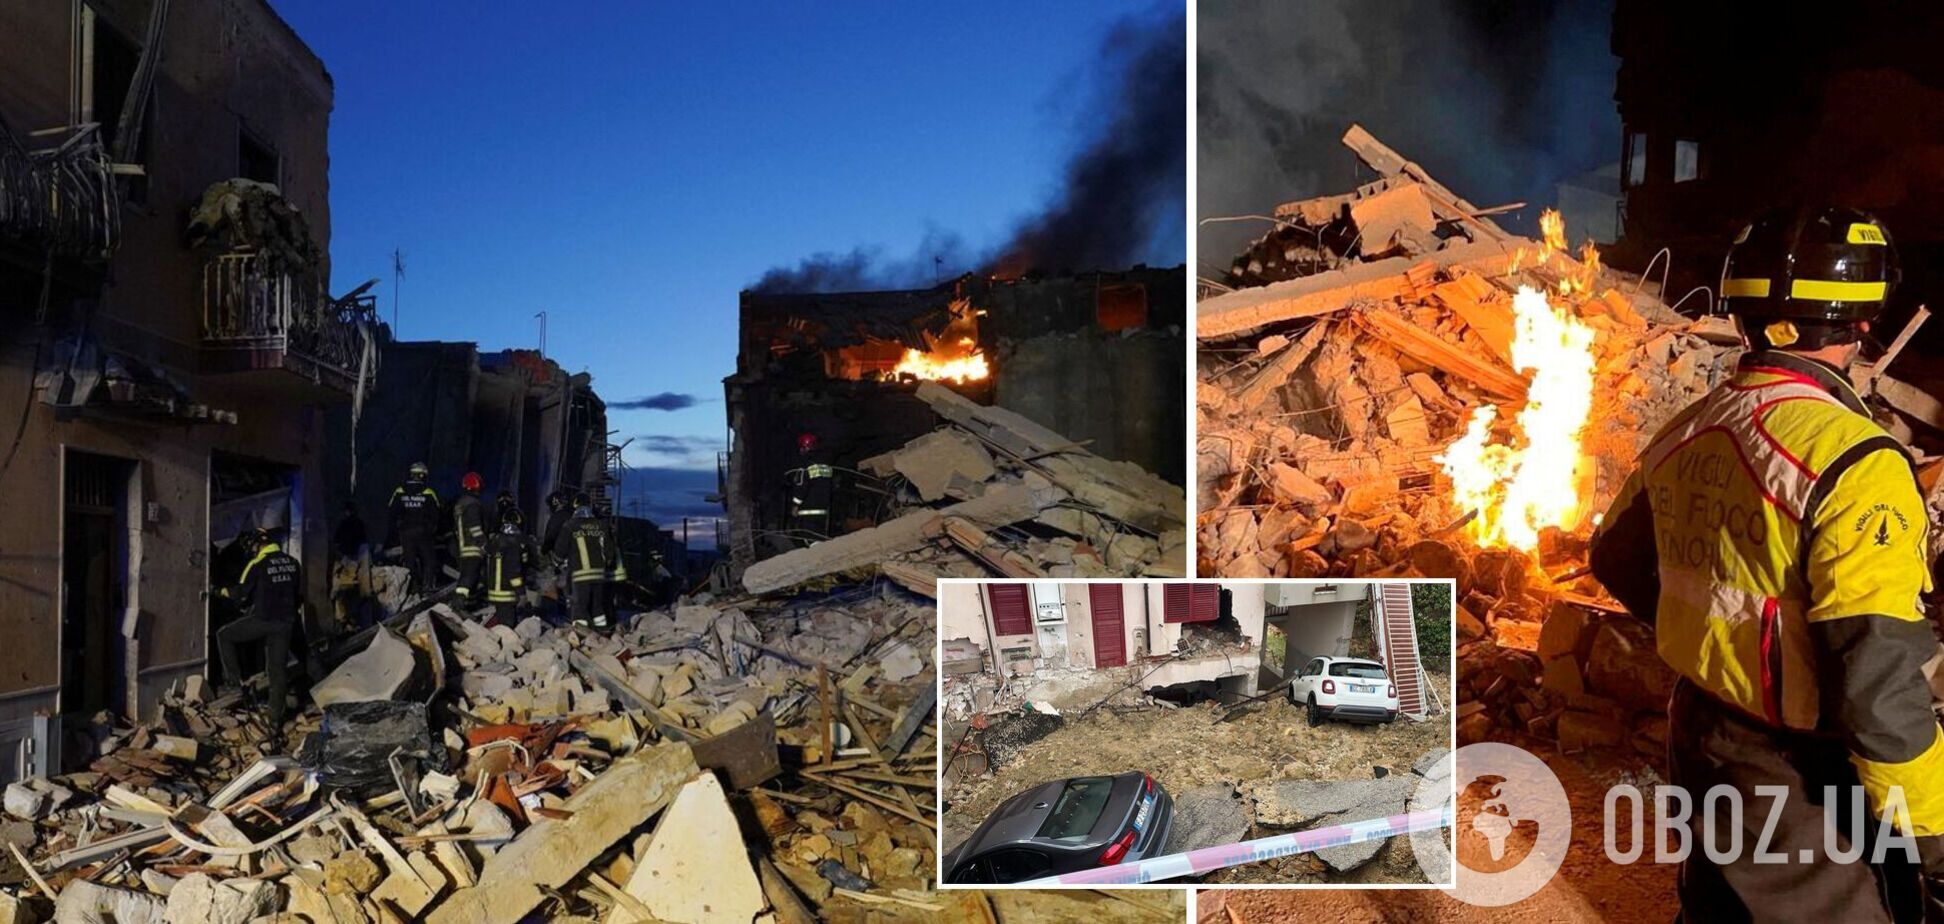 В Италии в результате взрыва обрушились дома: семь человек погибли, поиски пропавших продолжаются. Фото и видео